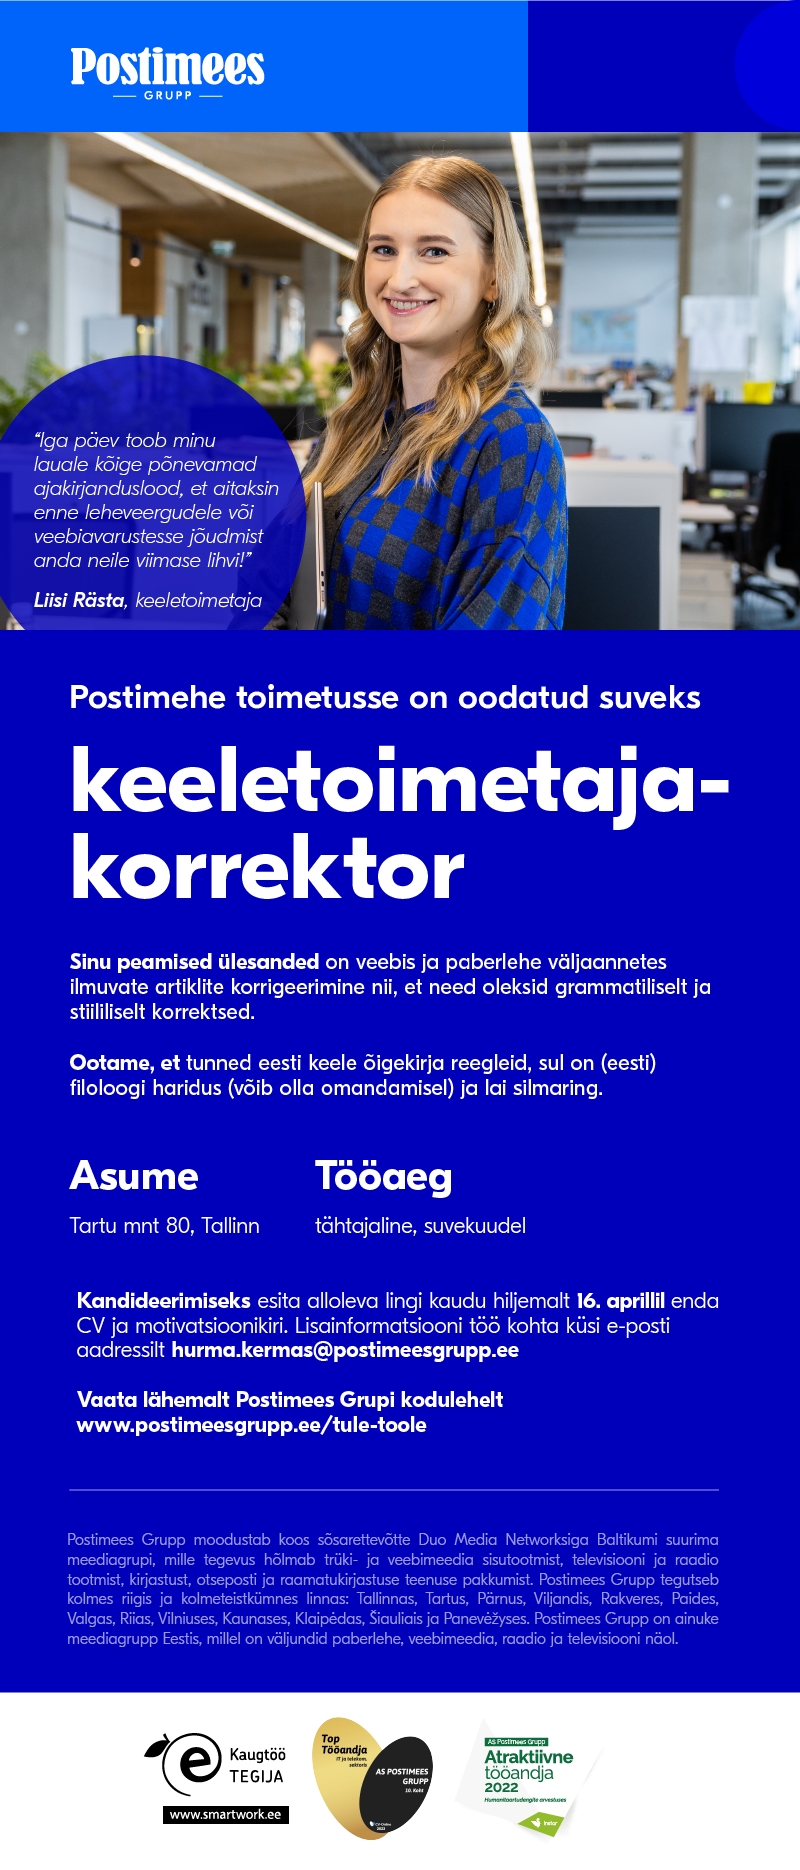 CVKeskus.ee klient Postimehe toimetuse suve keeletoimetaja-korrektor